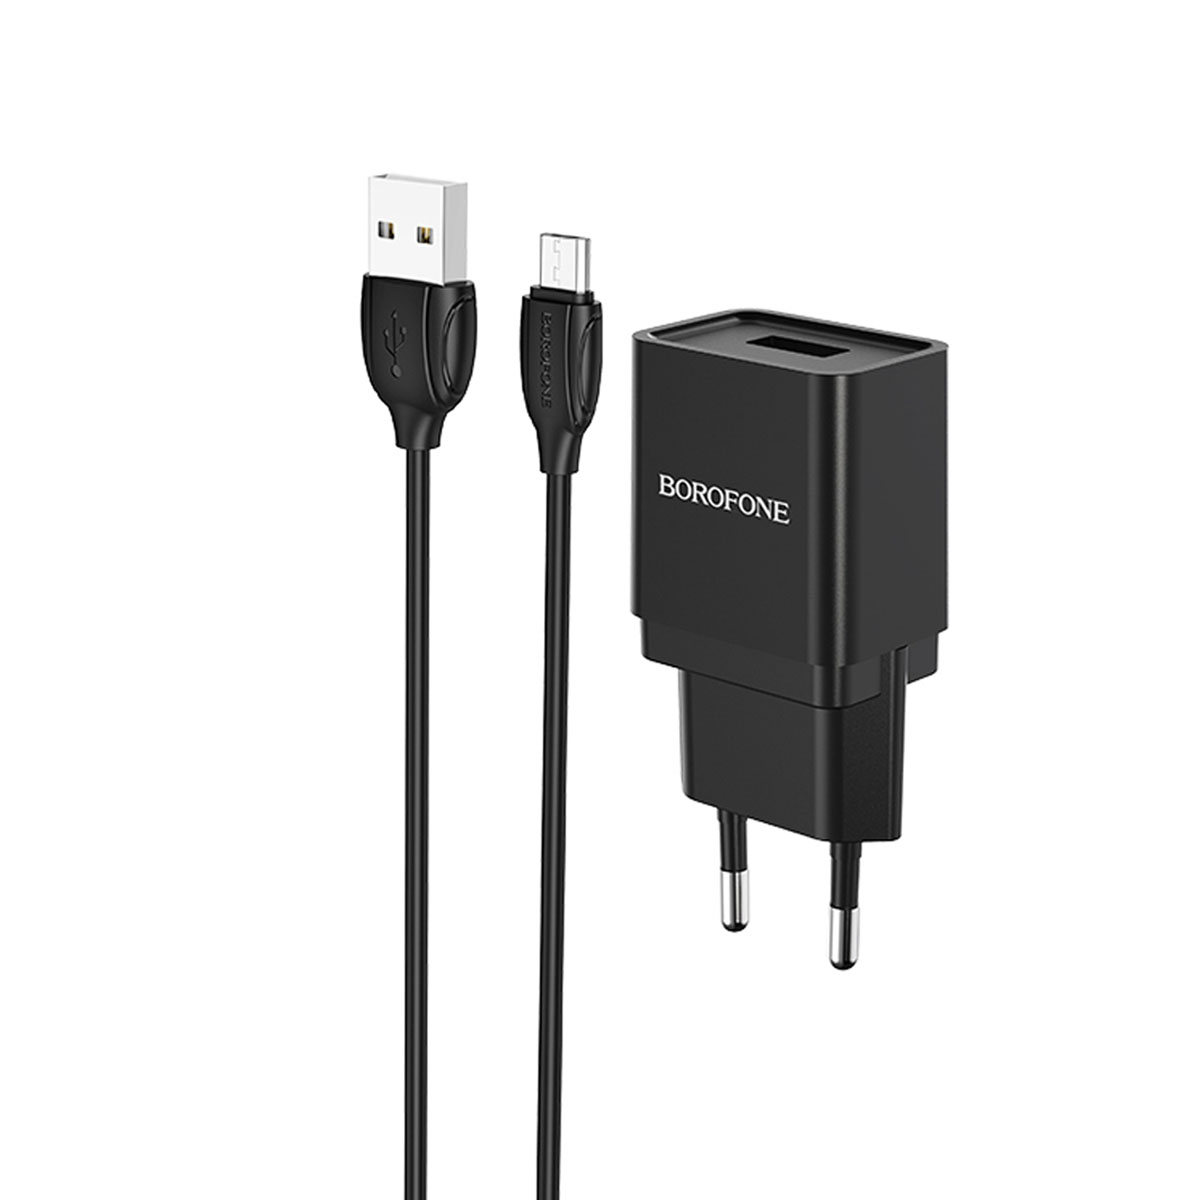 СЗУ (Сетевое зарядное устройство) BOROFONE BA19A Nimble с кабелем Micro USB, 1A, длина 1 метр, цвет черный